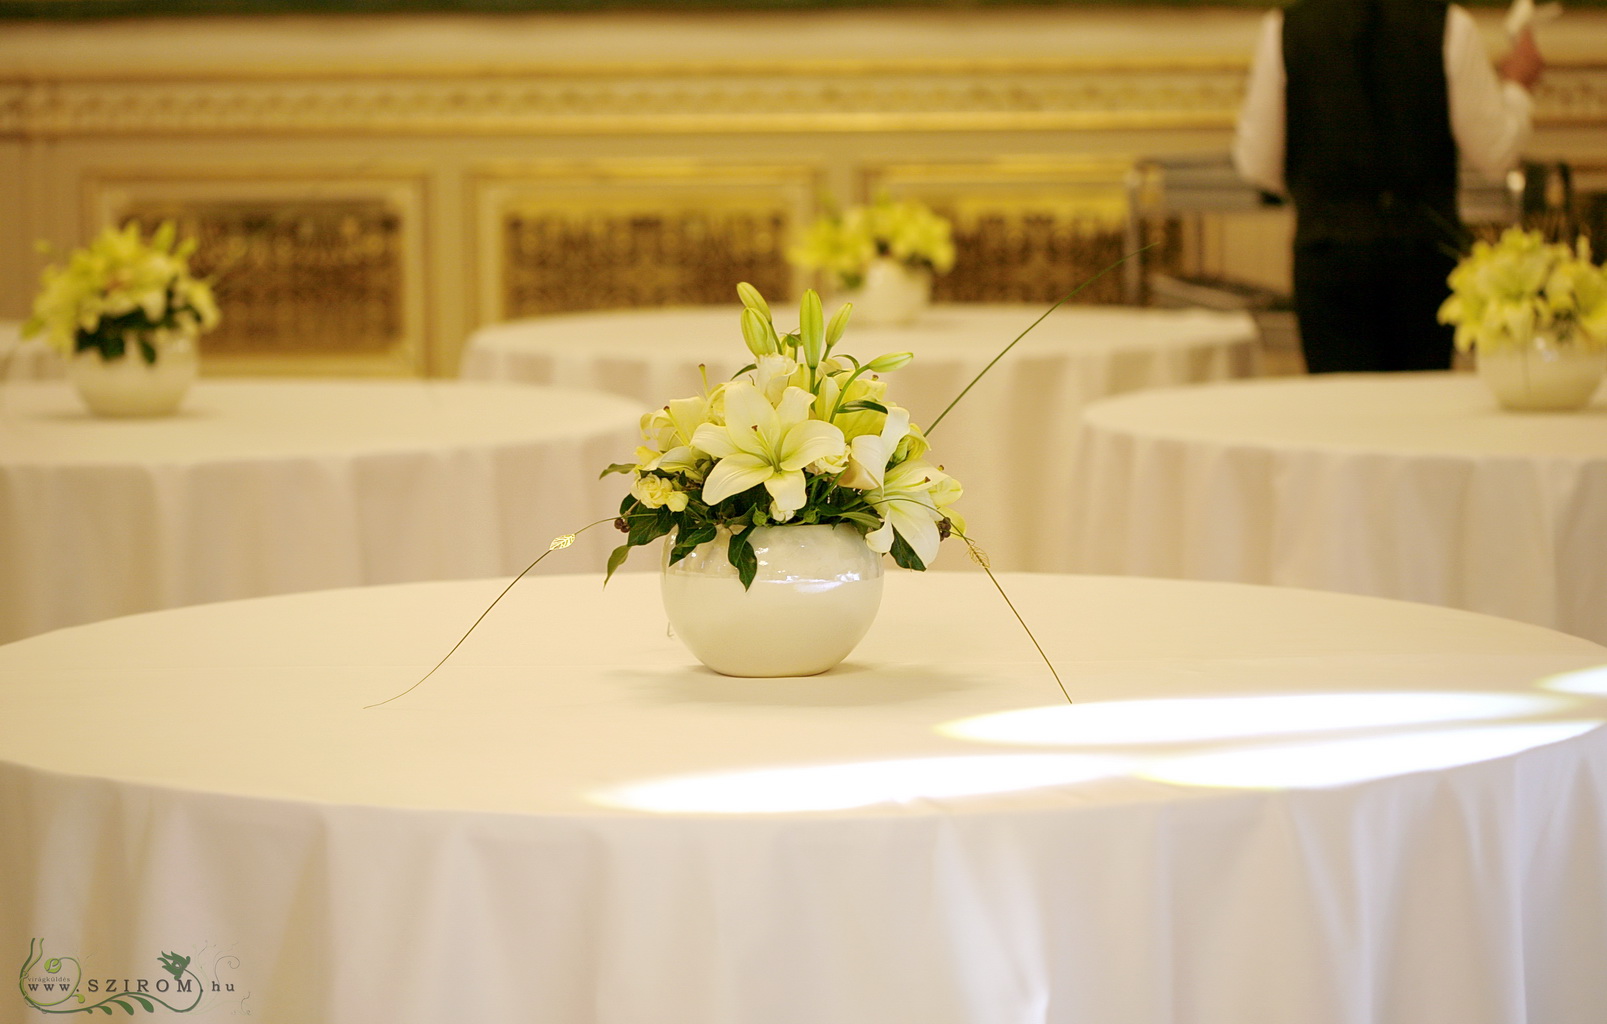 Liliomos asztaldísz, Corinthia Hotel Budapest (liziantusz, ázsiai liliom, krém), esküvő